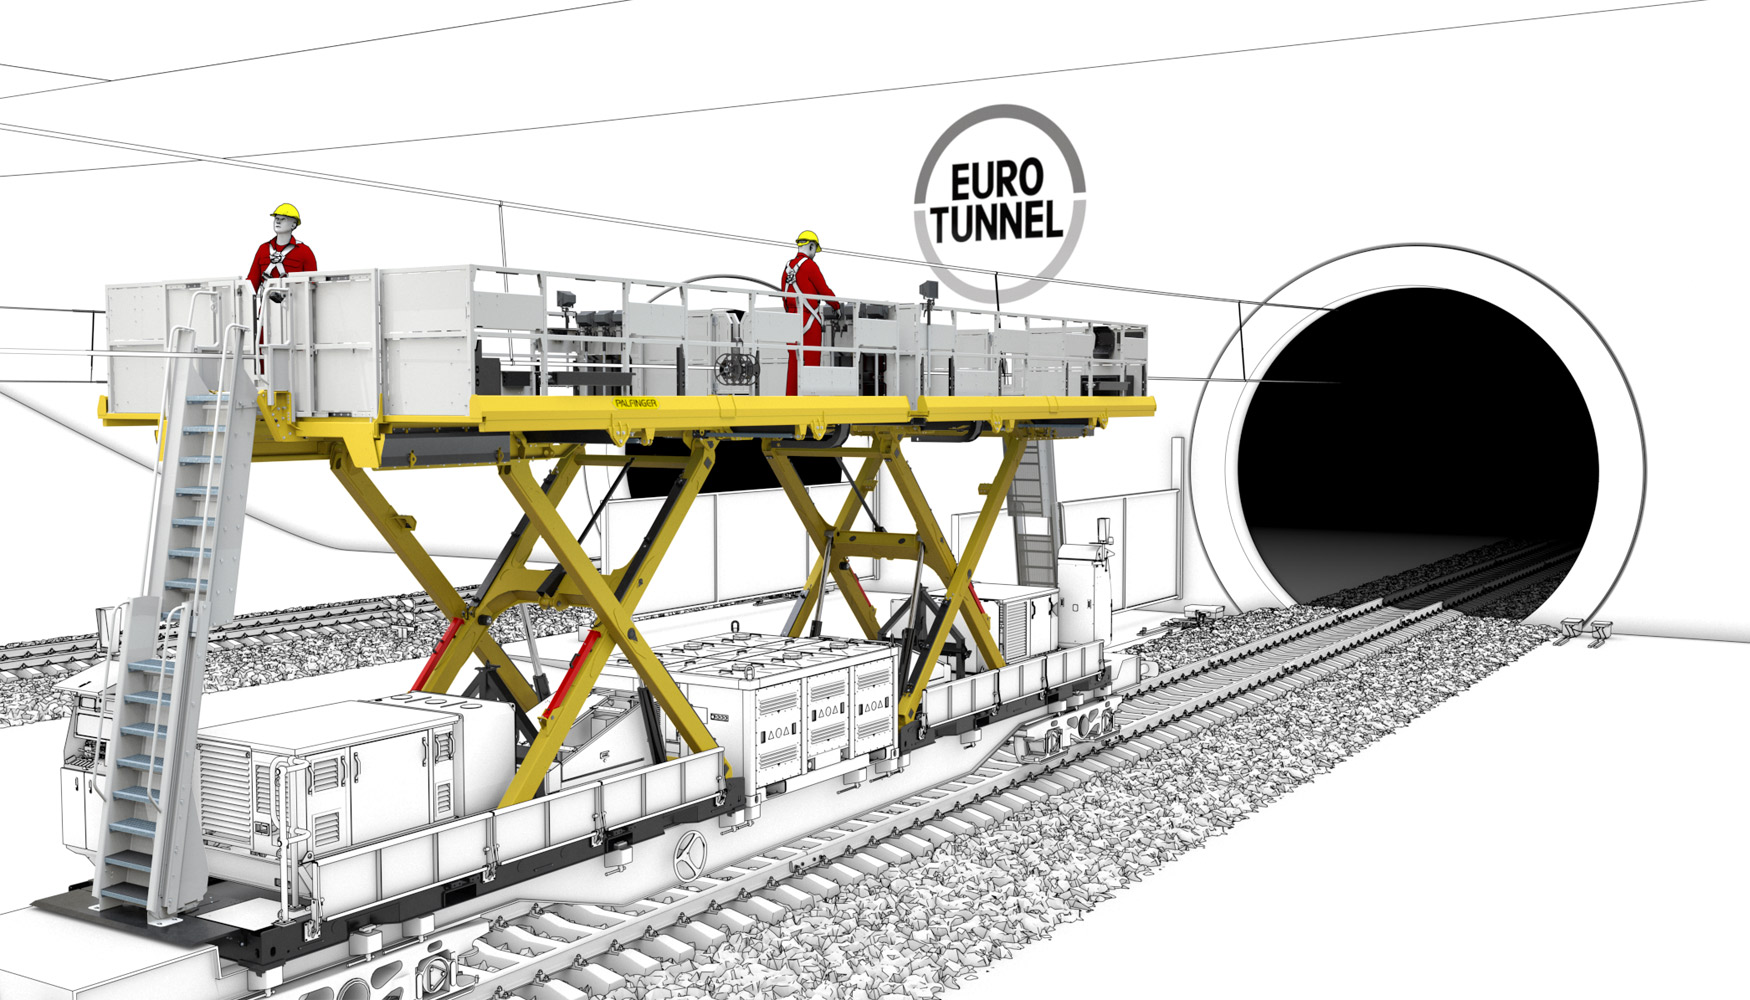 Plataforma elevadora de tijera PA1500 empleada para el mantenimiento del Eurotunnel